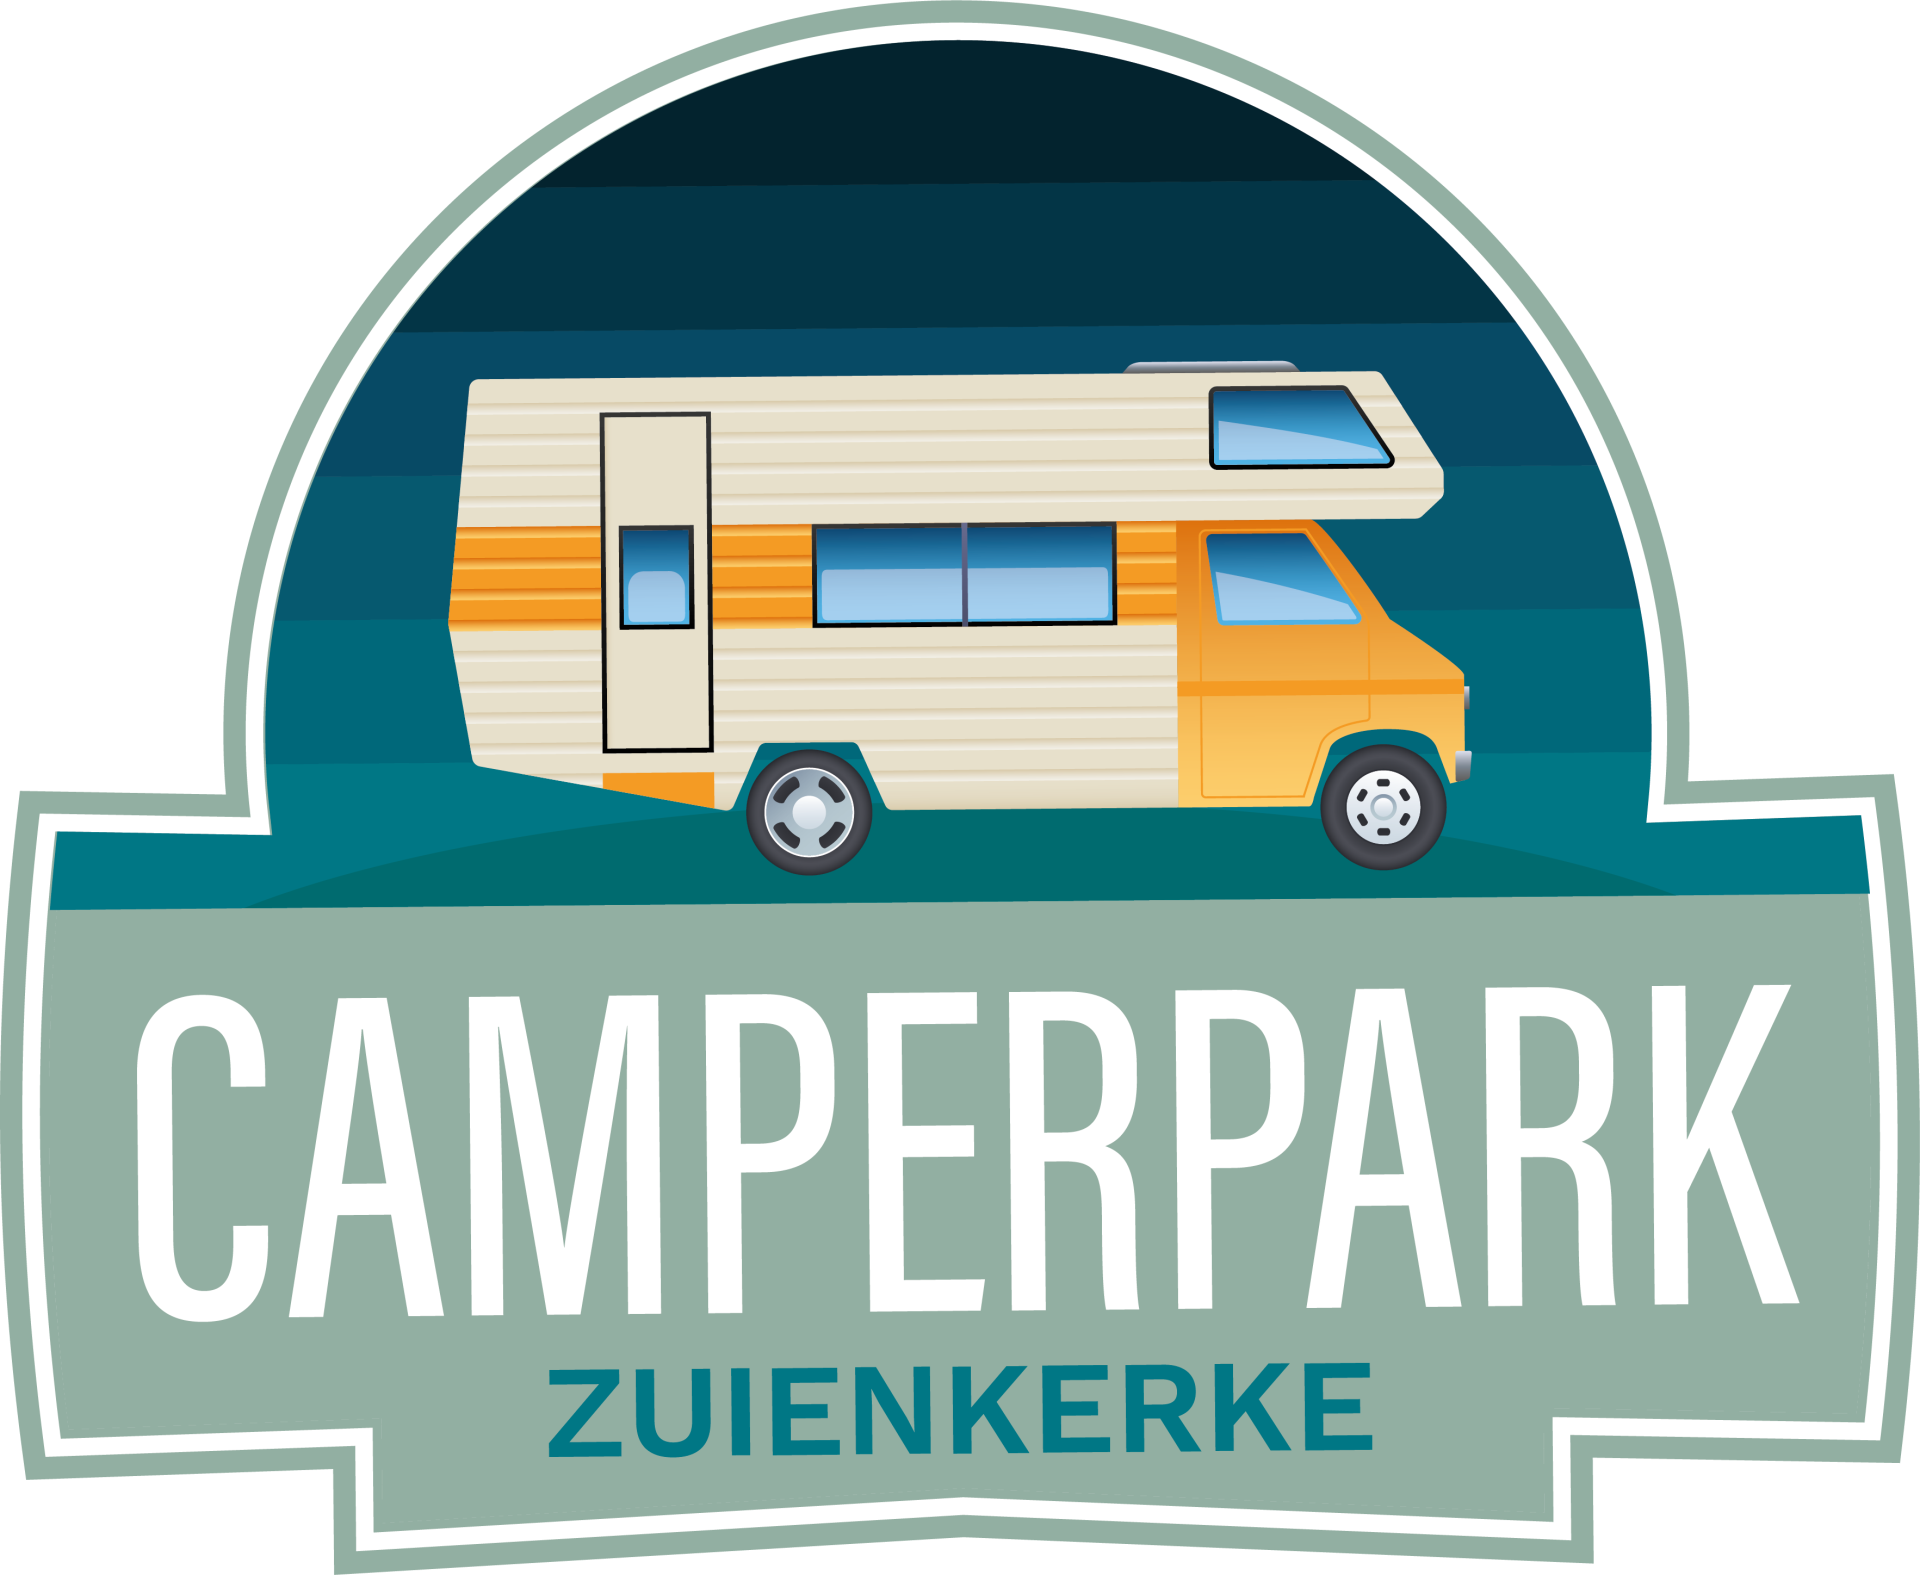 Camperpark Zuienkerke